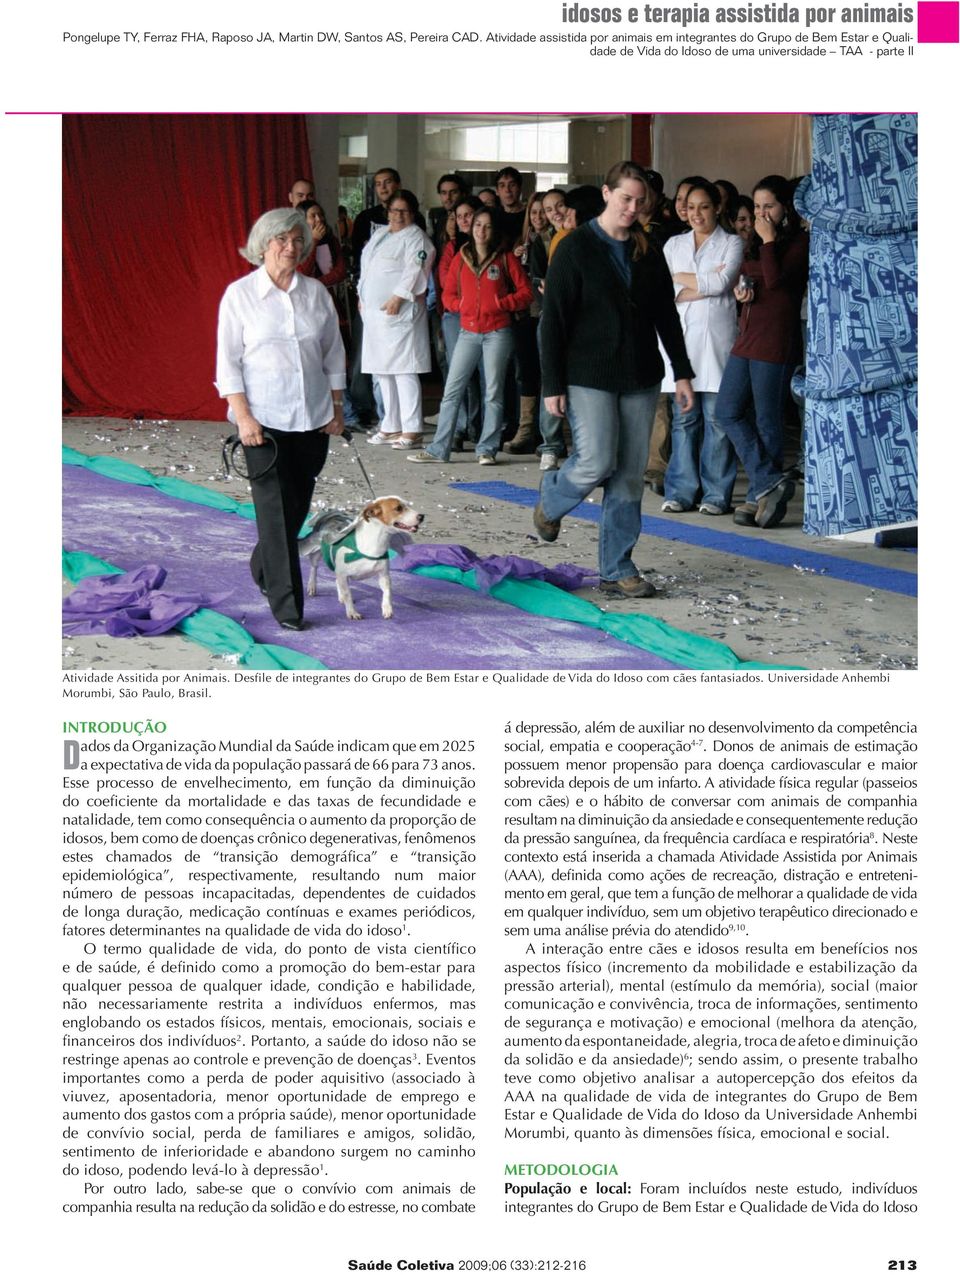 Desfile de integrantes do Grupo de Bem Estar e Qualidade de Vida do Idoso com cães fantasiados. Universidade Anhembi Morumbi, São Paulo, Brasil.